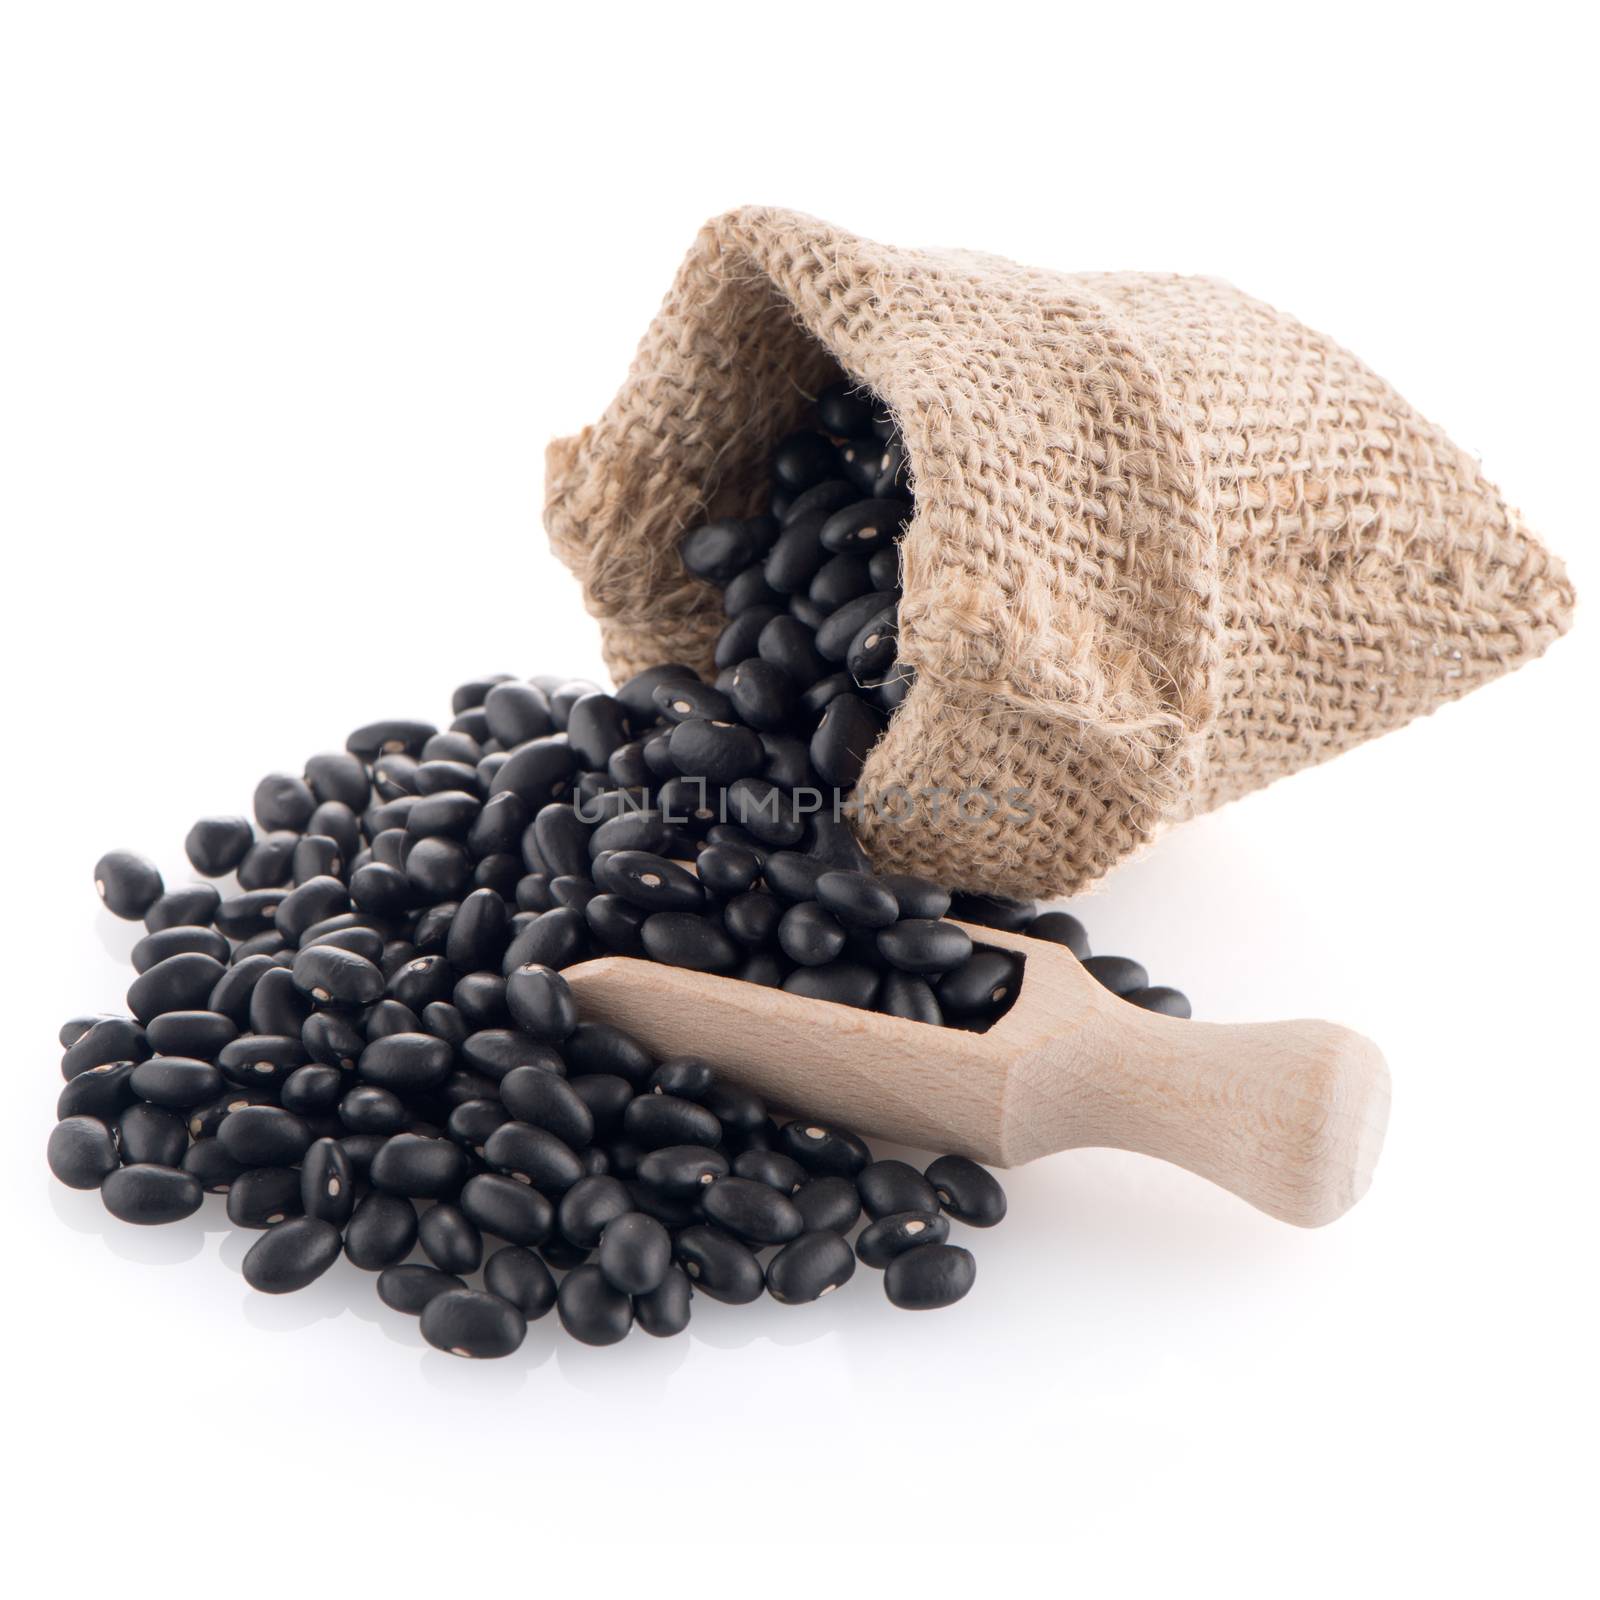 Black beans bag by homydesign